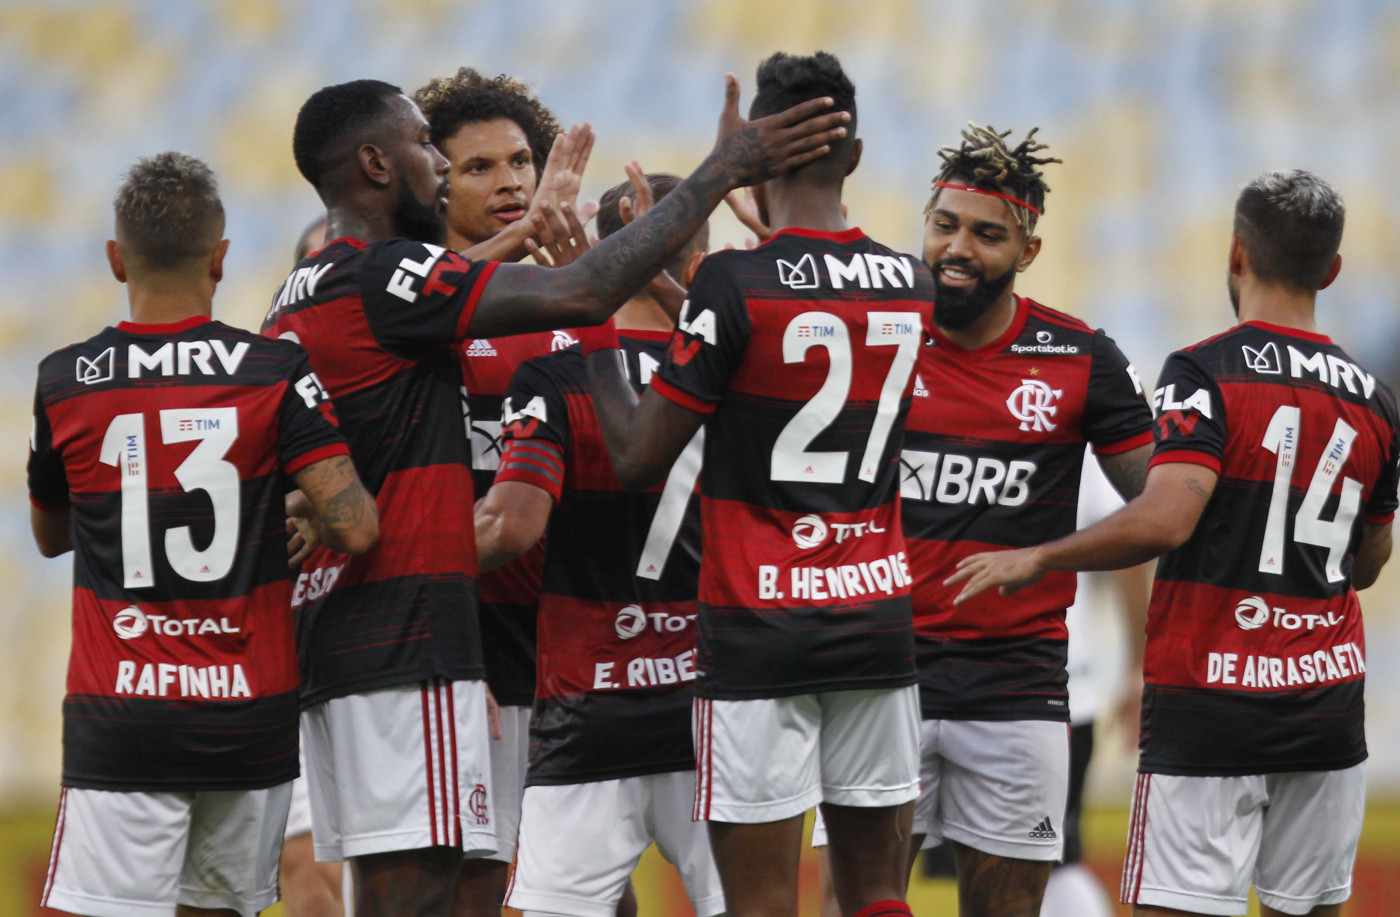 Flamengo x Volta Redonda Ao Vivo - Semifinal Taça Rio 